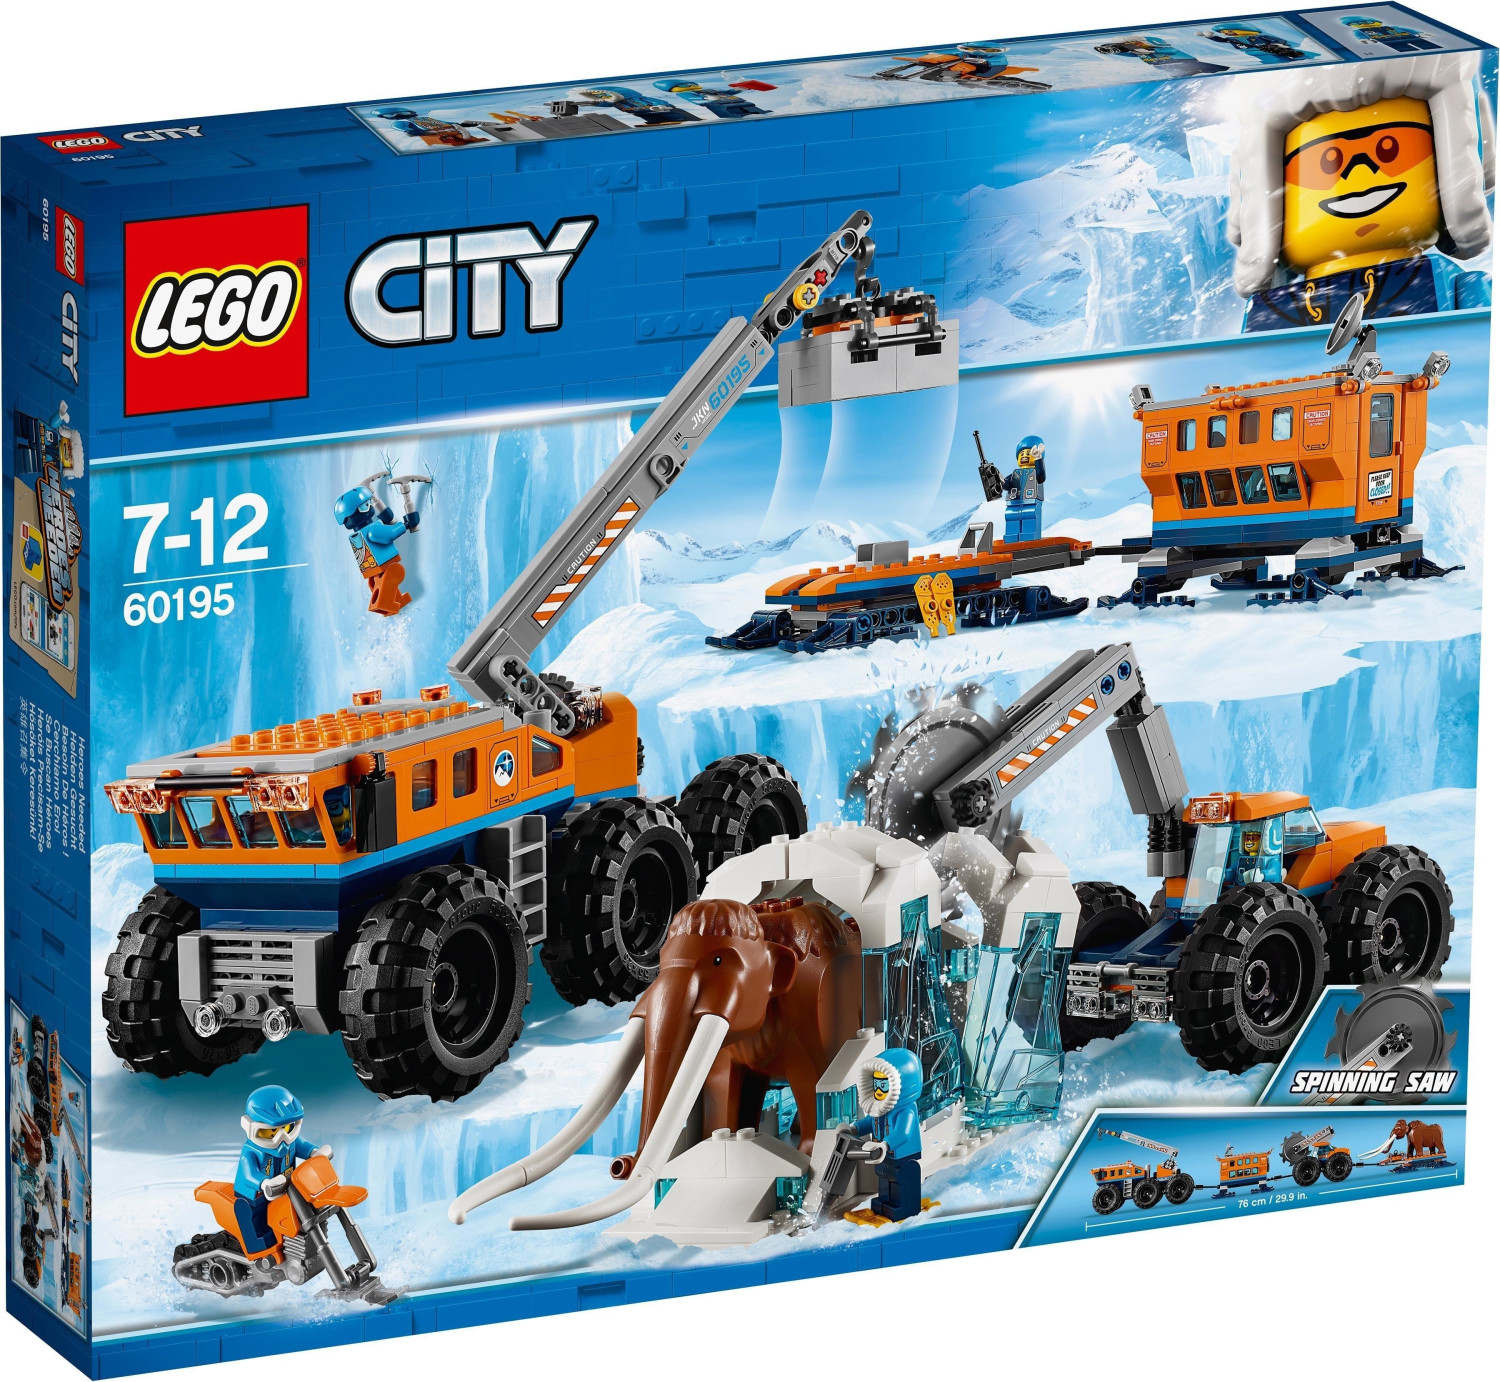 LEGO 60378 City Le Camion d'Exploration Arctique et Le Laboratoire